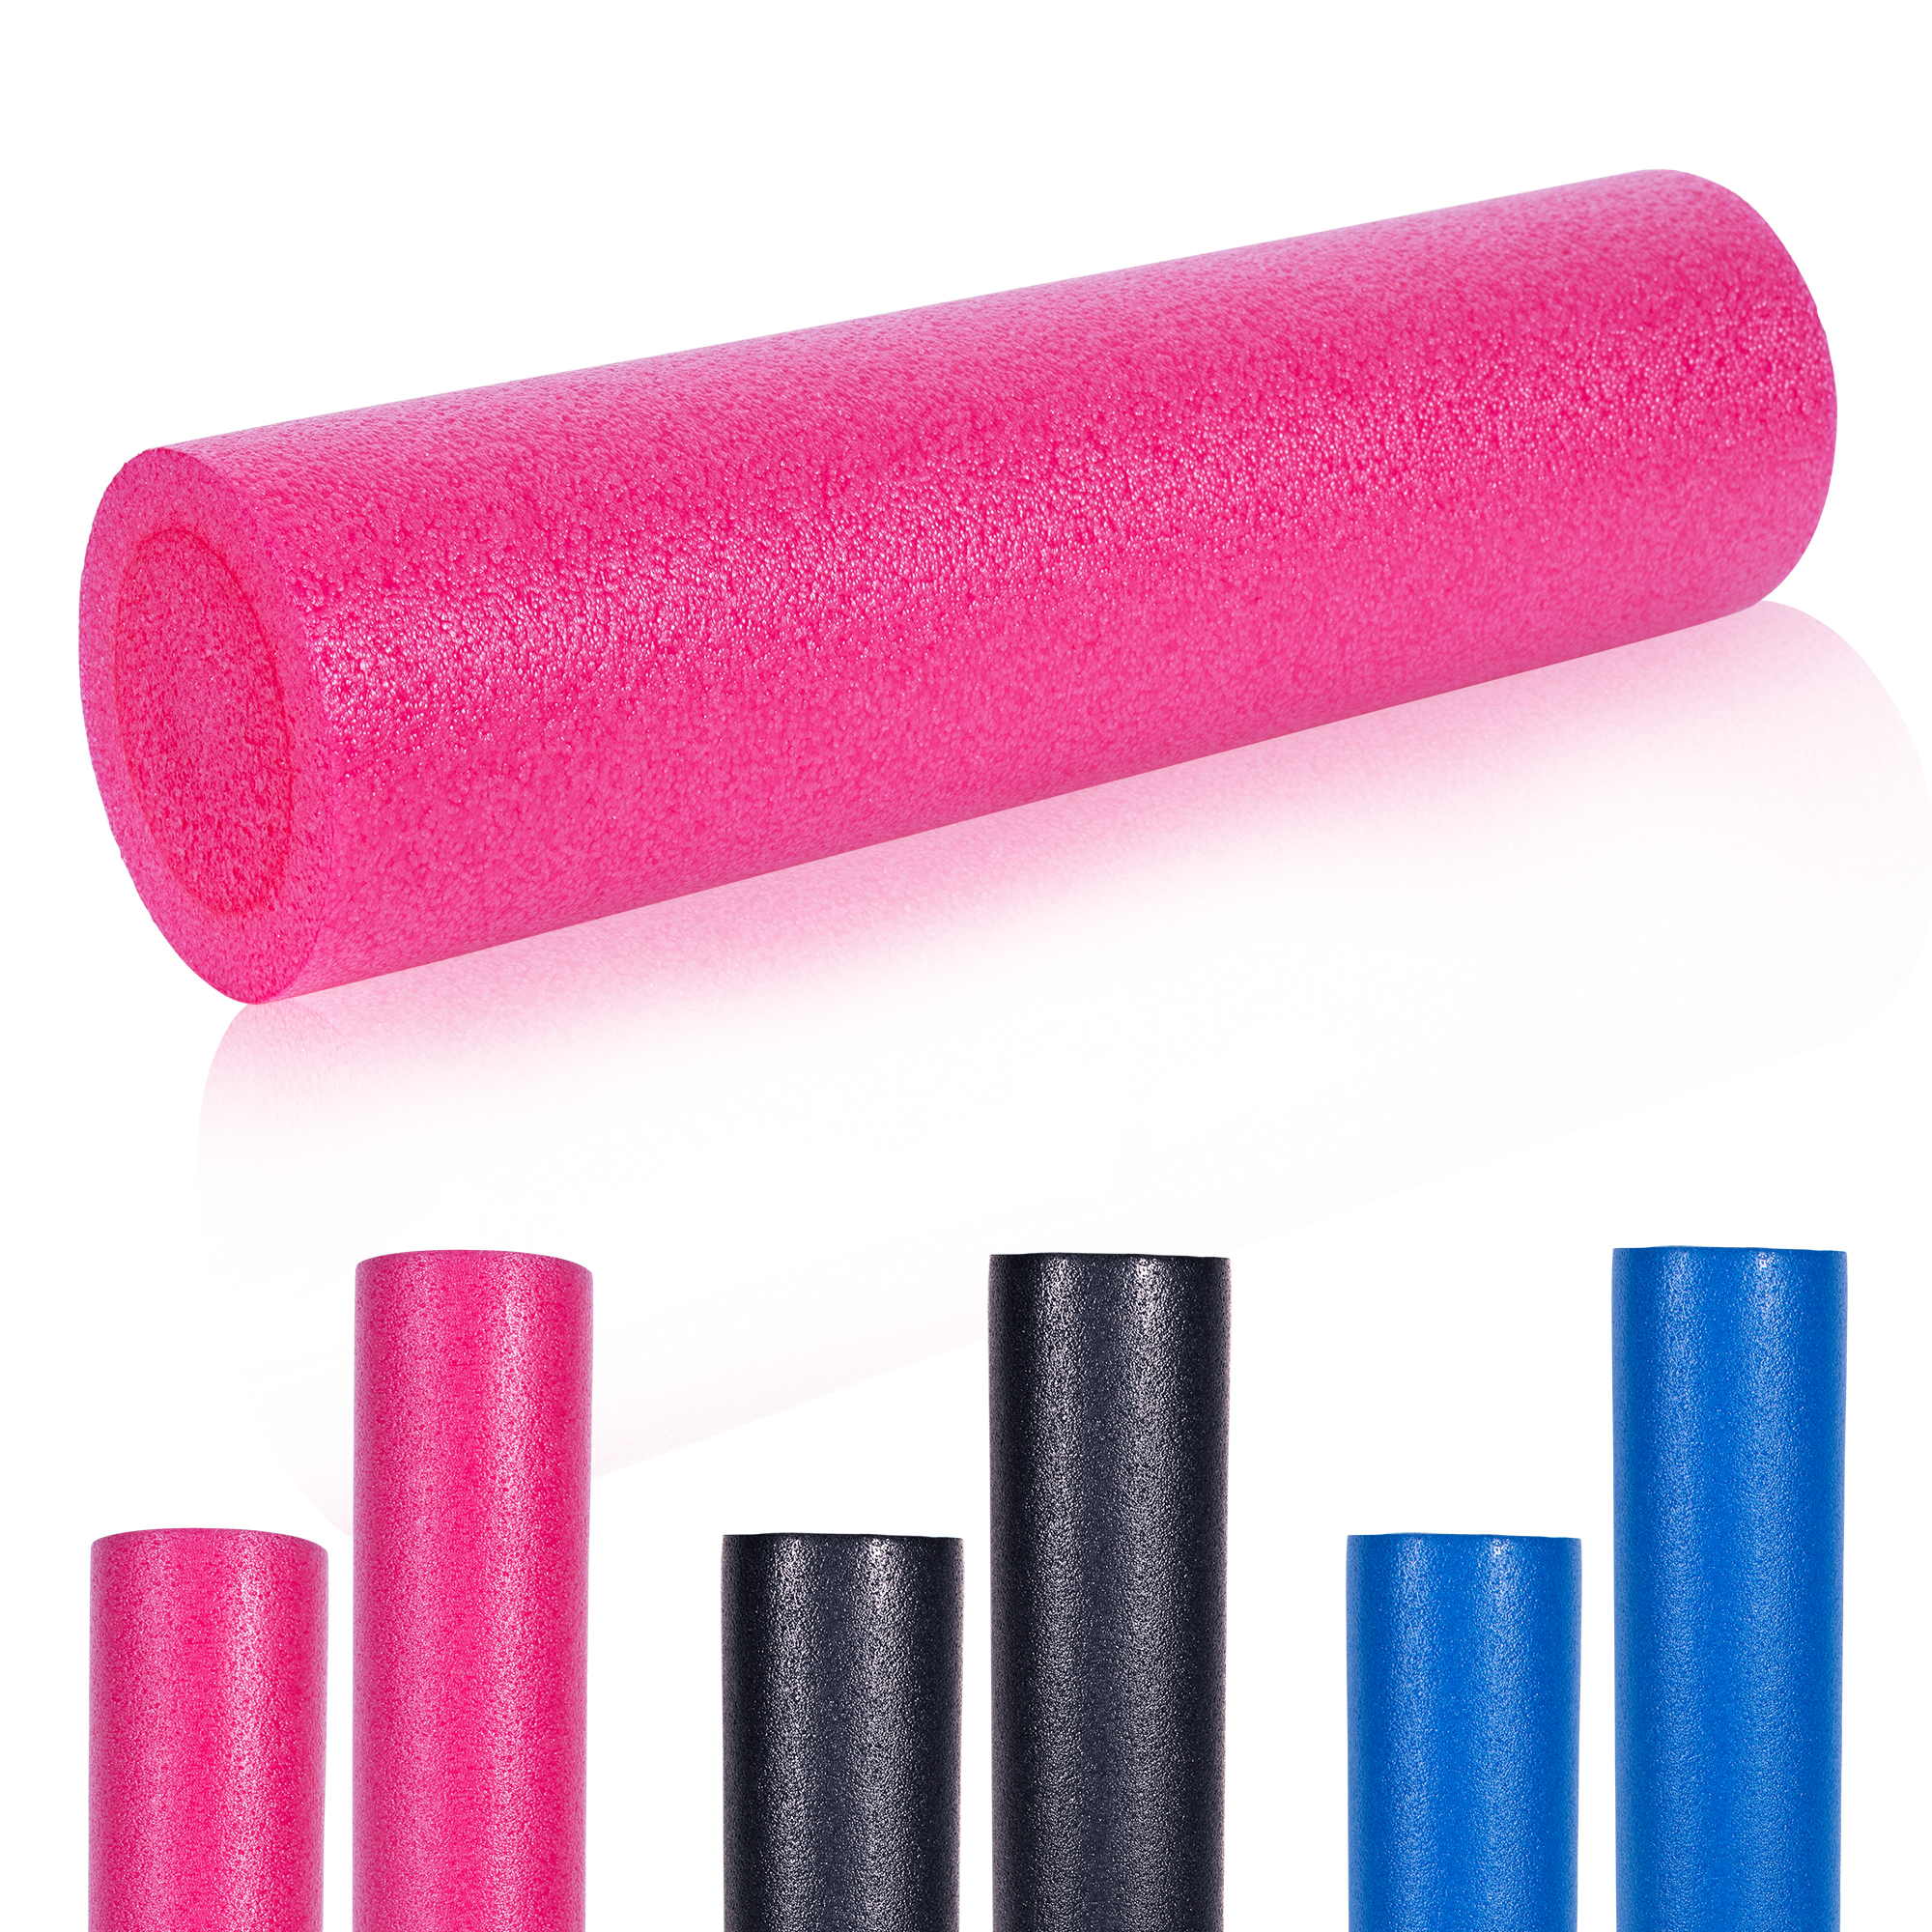 GORILLA SPORTSÂ® Rouleau de Pilates en mousse 60 x 15 cm - Rouleau de yoga pour l'auto-massage et la stimulation des fascias - Coloris rose